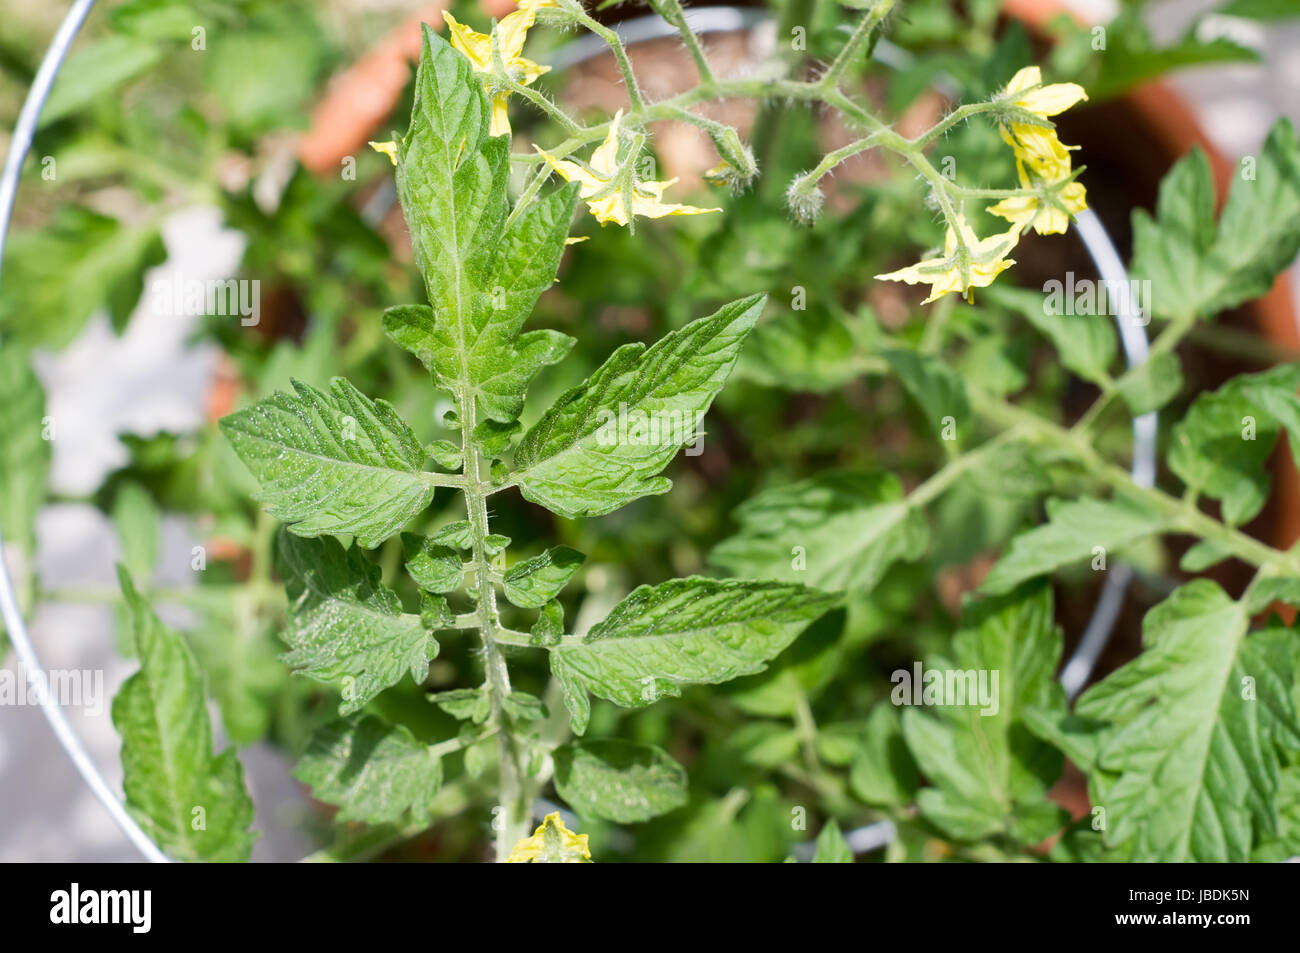 Draufsicht auf eine blühende Tomatenpflanze in einem Topf schleicht sich ein Draht Gitter in einem Hinterhofgarten. Kalifornien, USA Stockfoto